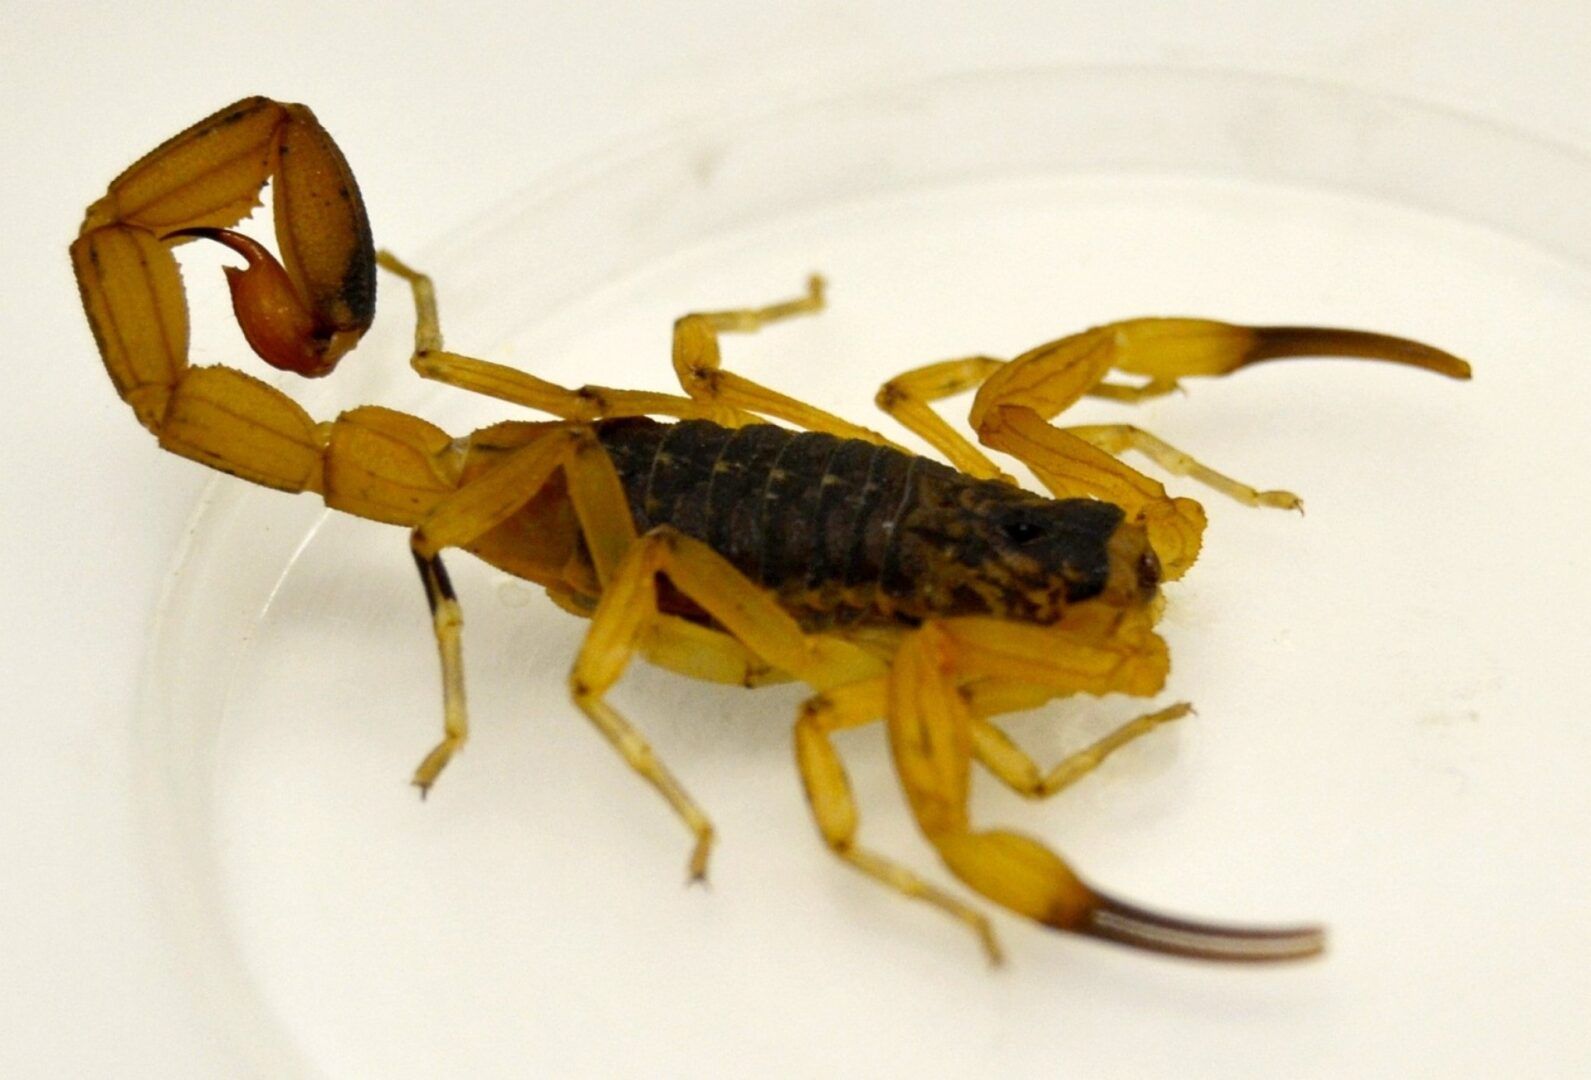 Picada de escorpião - O que fazer, o que não fazer e como evitar